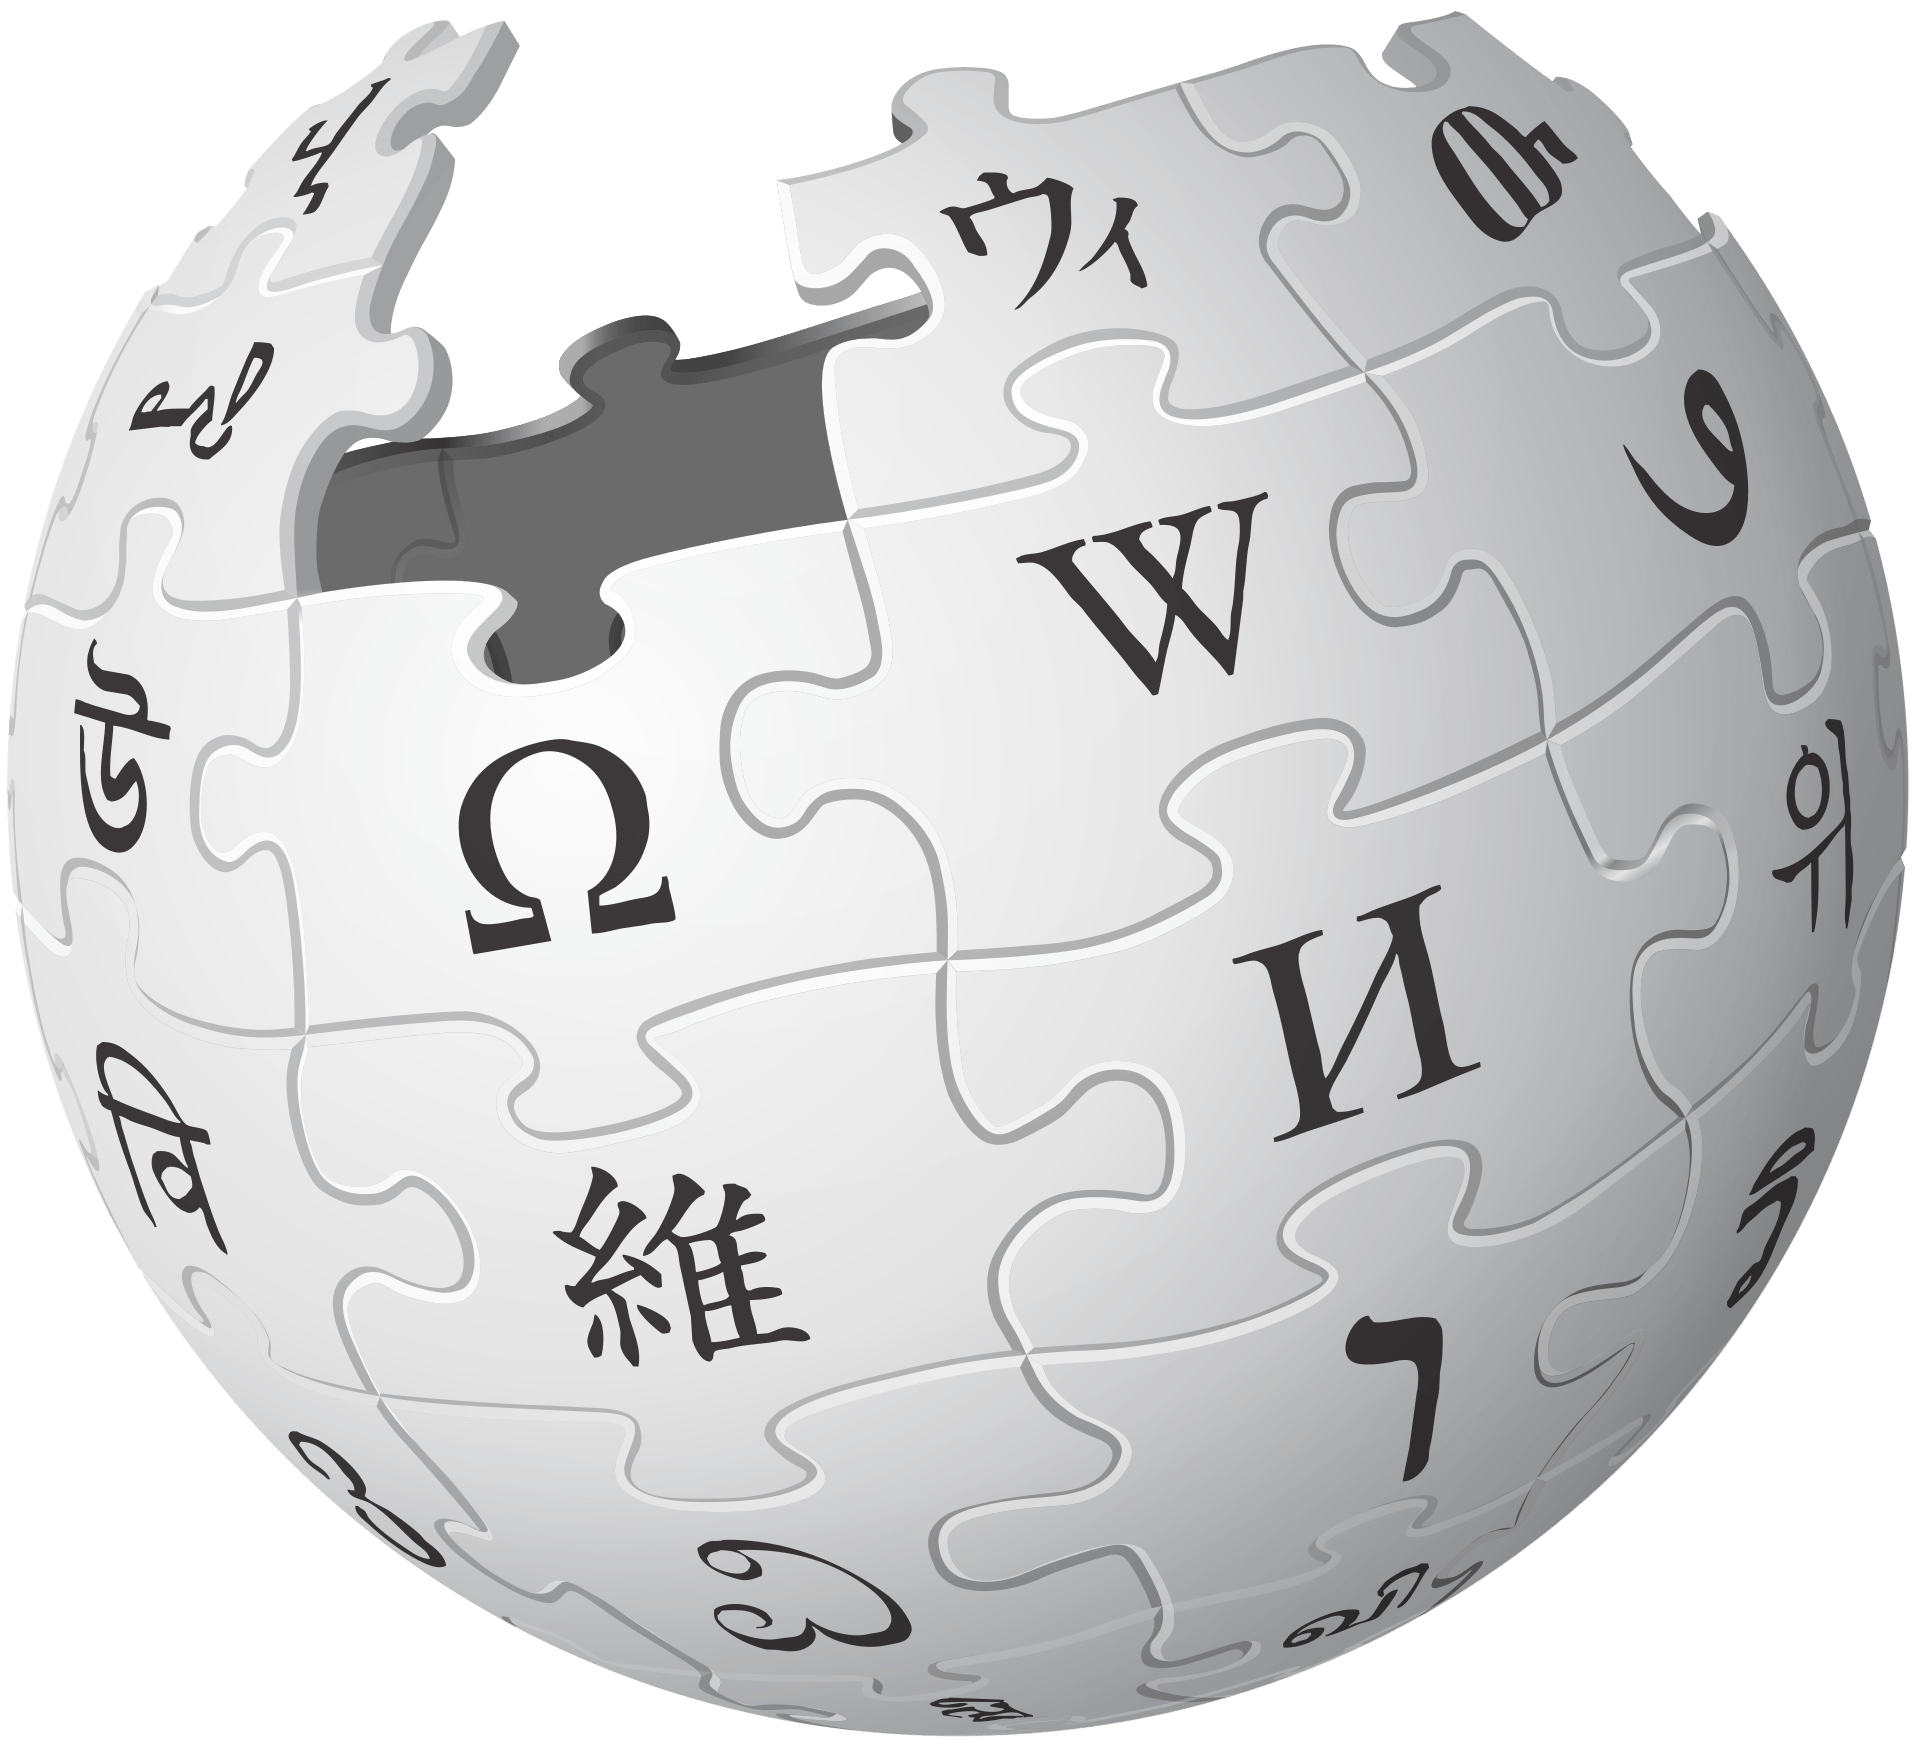 https://portalcbncampinas.com.br/wp-content/uploads/2021/01/portalcbncampinas.com.br-wikipedia-comemora-20-anos-e-se-consolida-como-um-espaco-livre-e-colaborativo-1920px-wikipedia-logo-v2.svg.png